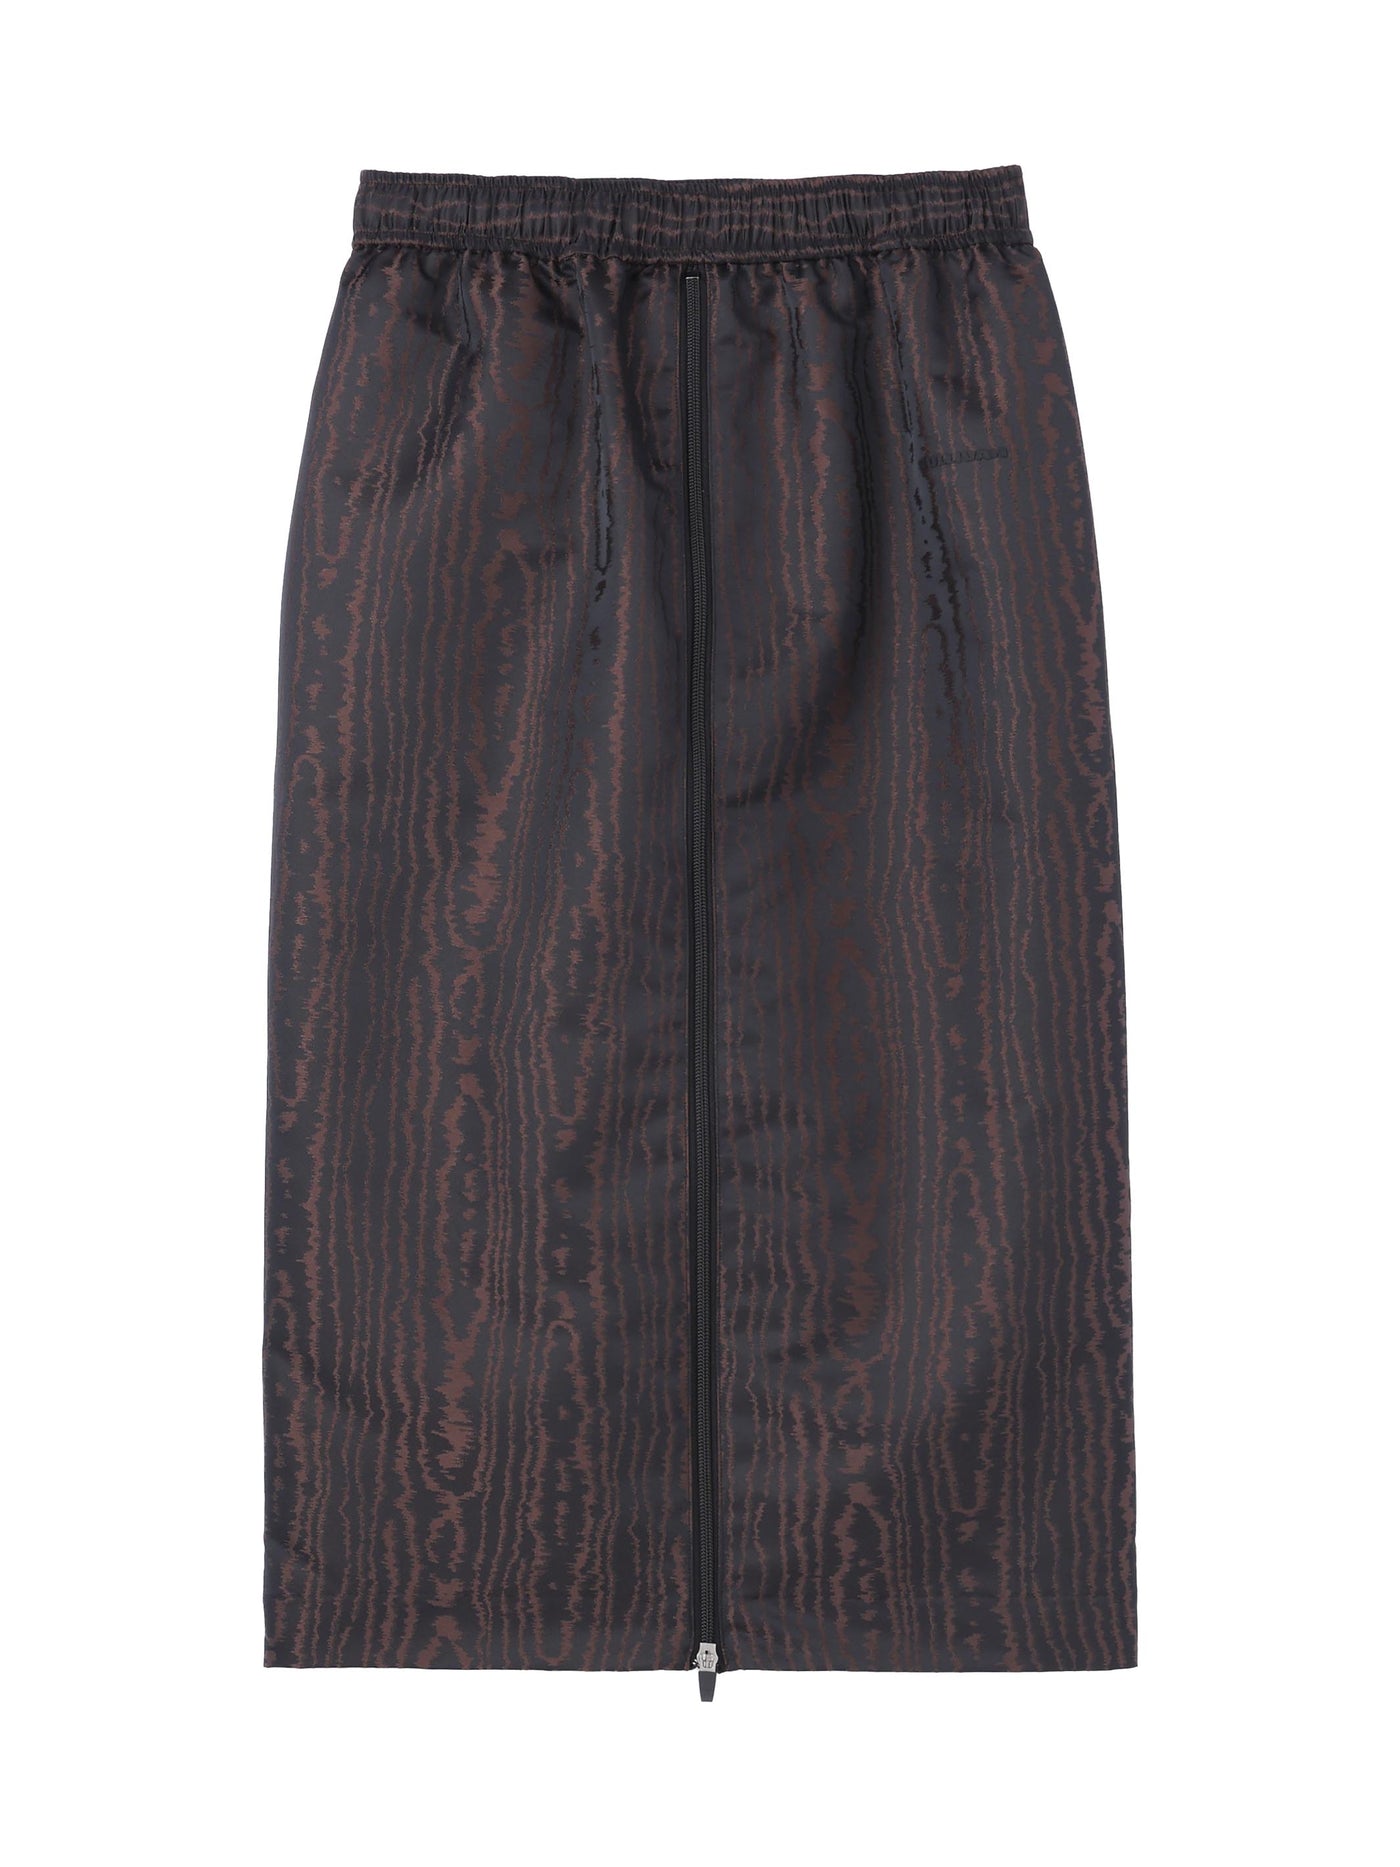 Moire jacquard zipped skirt